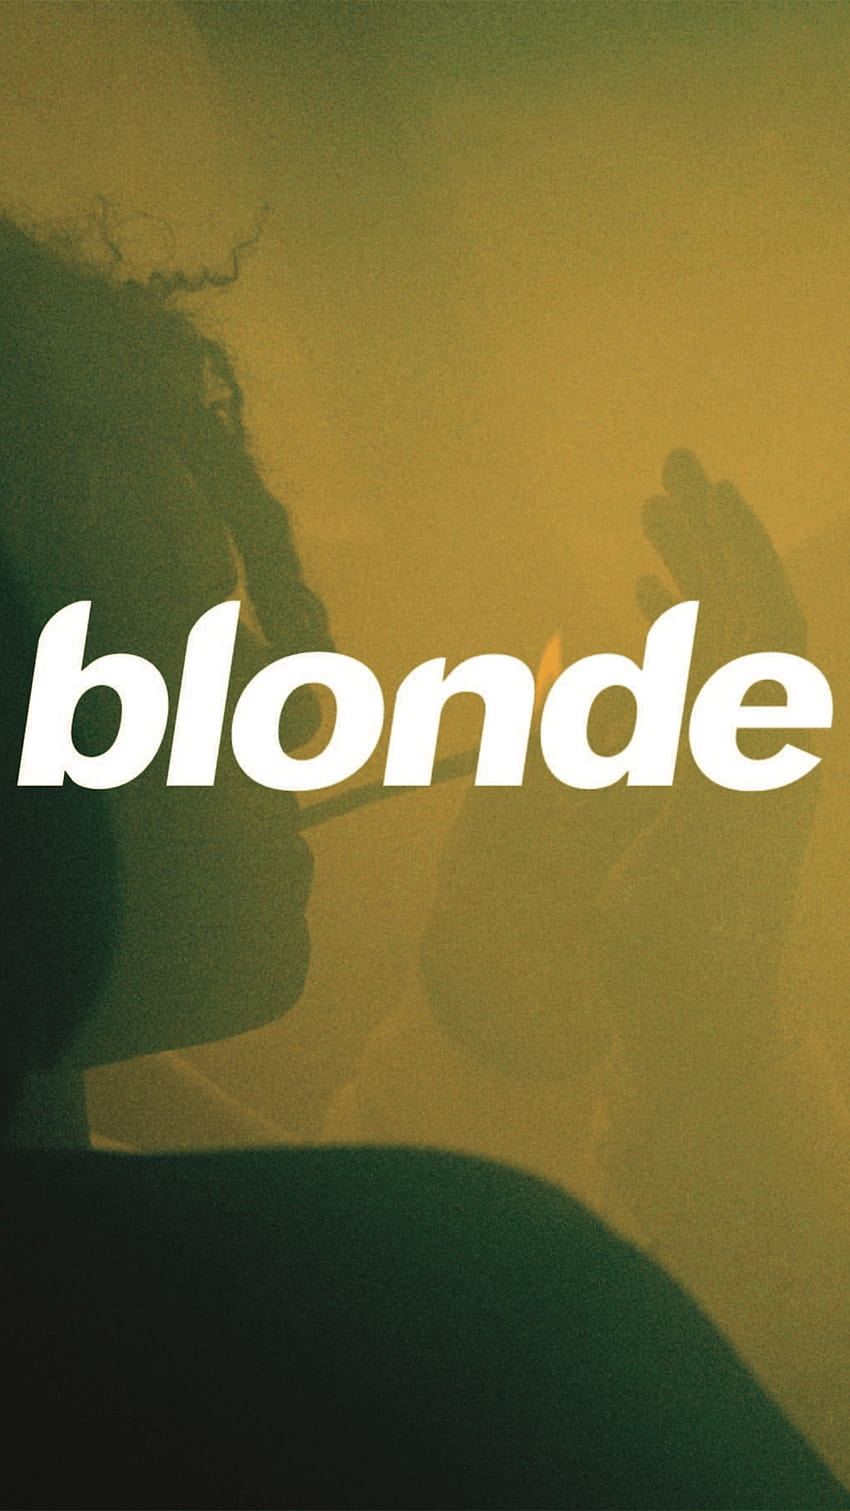 ¡OTRO! Blonde Alt Cover 2 Teléfono : FrankOcean, frank ocean 2018 fondo de pantalla del teléfono